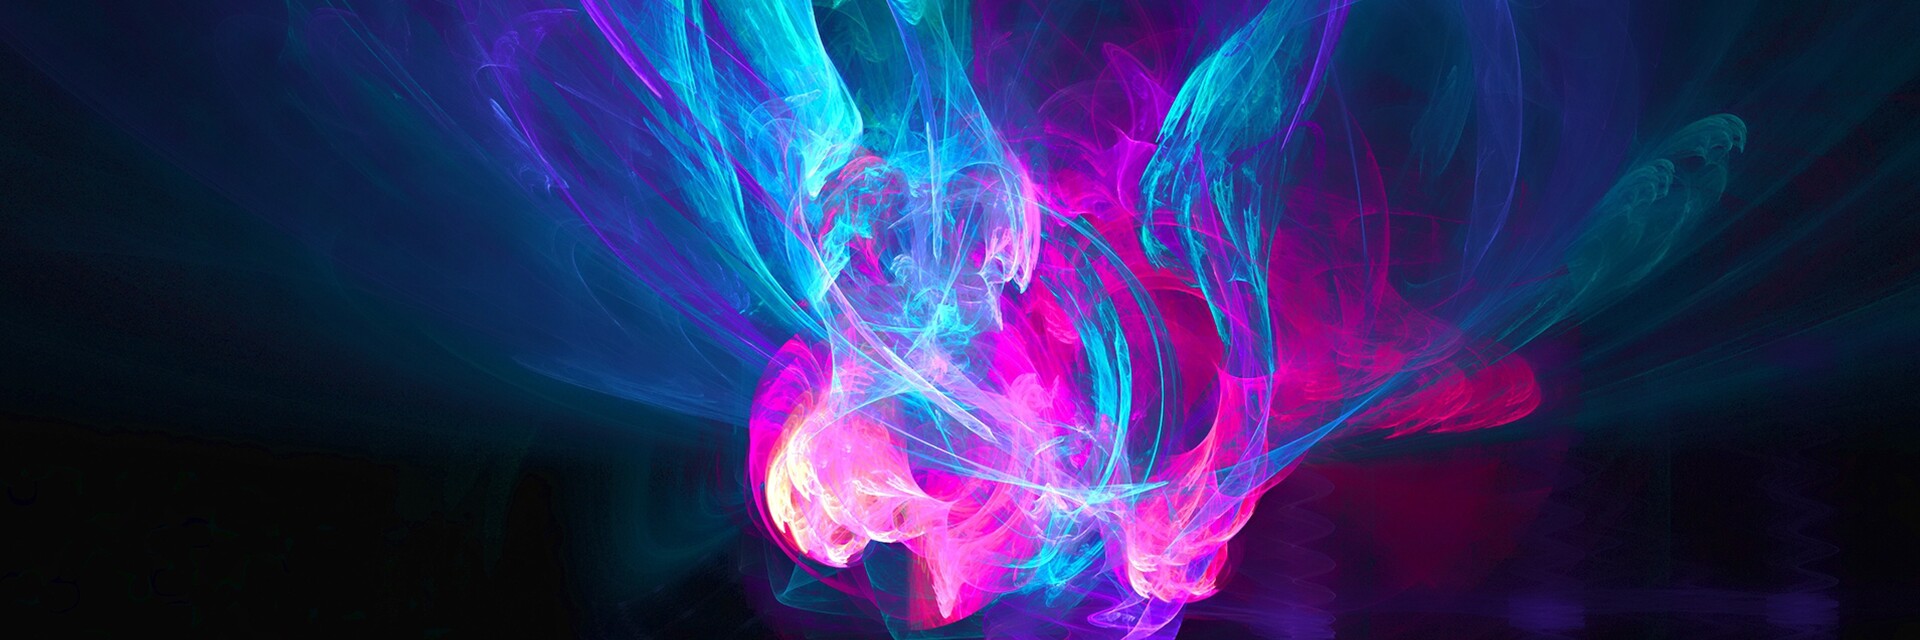 Hot graphics. Неоновый дым. Сердце неон на черном фоне. Красивая обложка для ВК 3д. Картинки анимация цветной абстрактный дым.